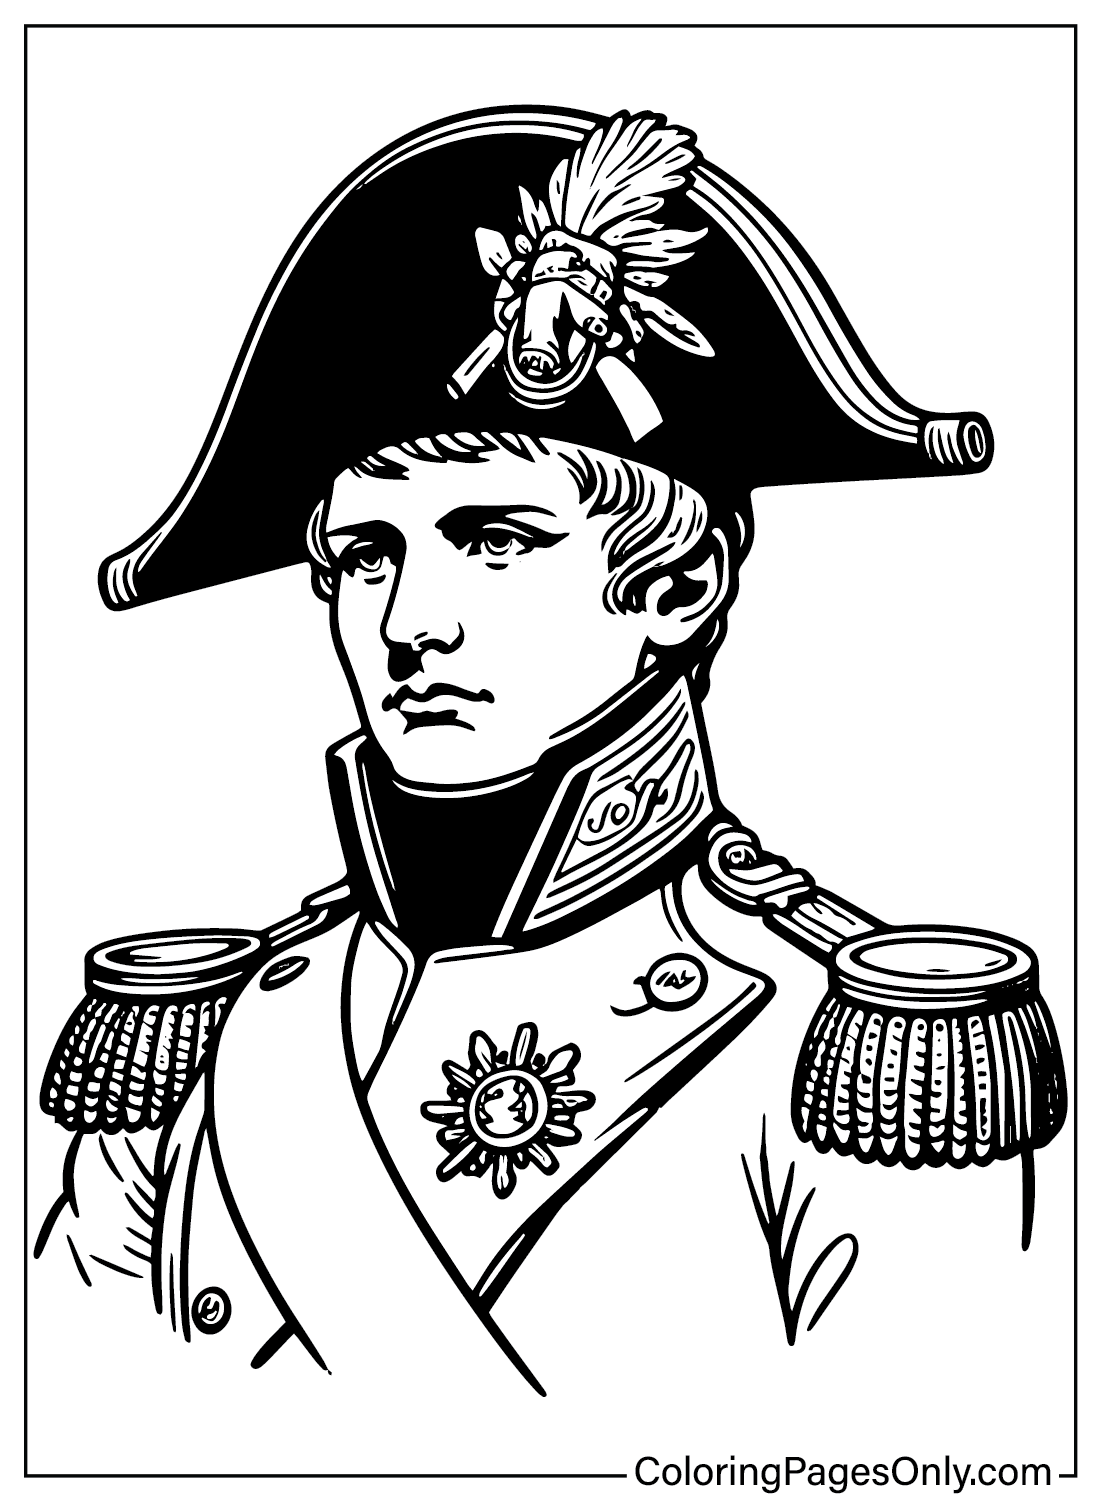 Página para colorear de Napoleón Bonaparte imprimible de Napoleón Bonaparte